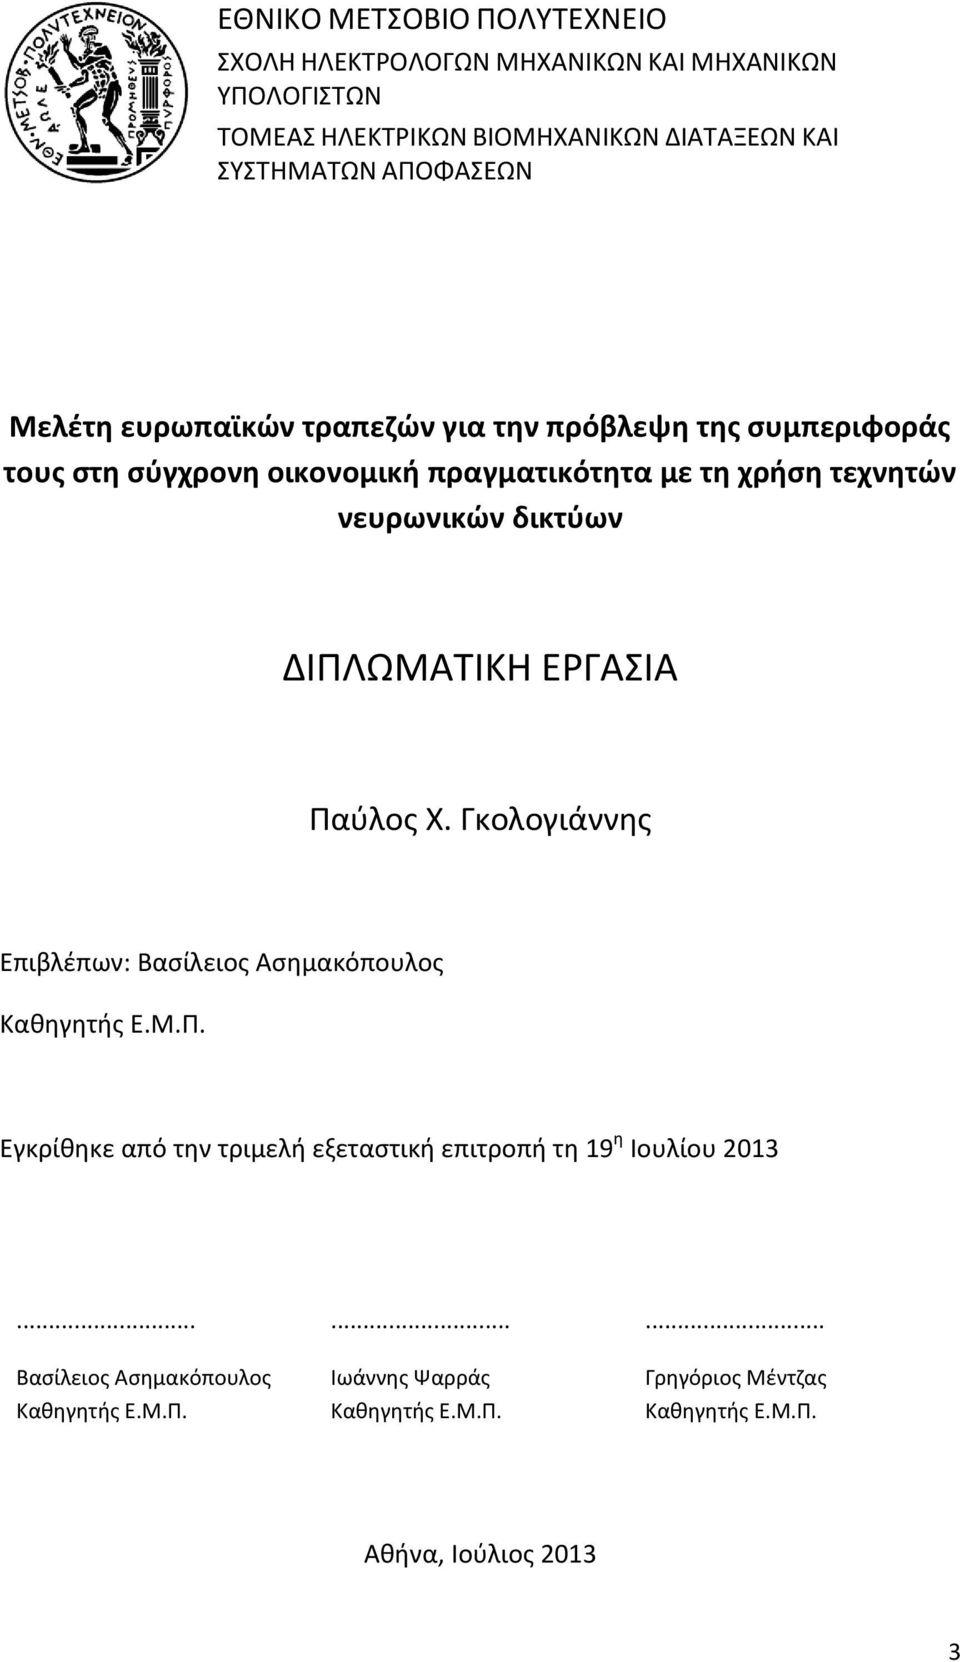 Παύλος Χ. Γκολογιάννης Επιβλέπων: Βασίλειος Ασημακόπουλος Καθηγητής Ε.Μ.Π. Εγκρίθηκε από την τριμελή εξεταστική επιτροπή τη 19 η Ιουλίου 2013.